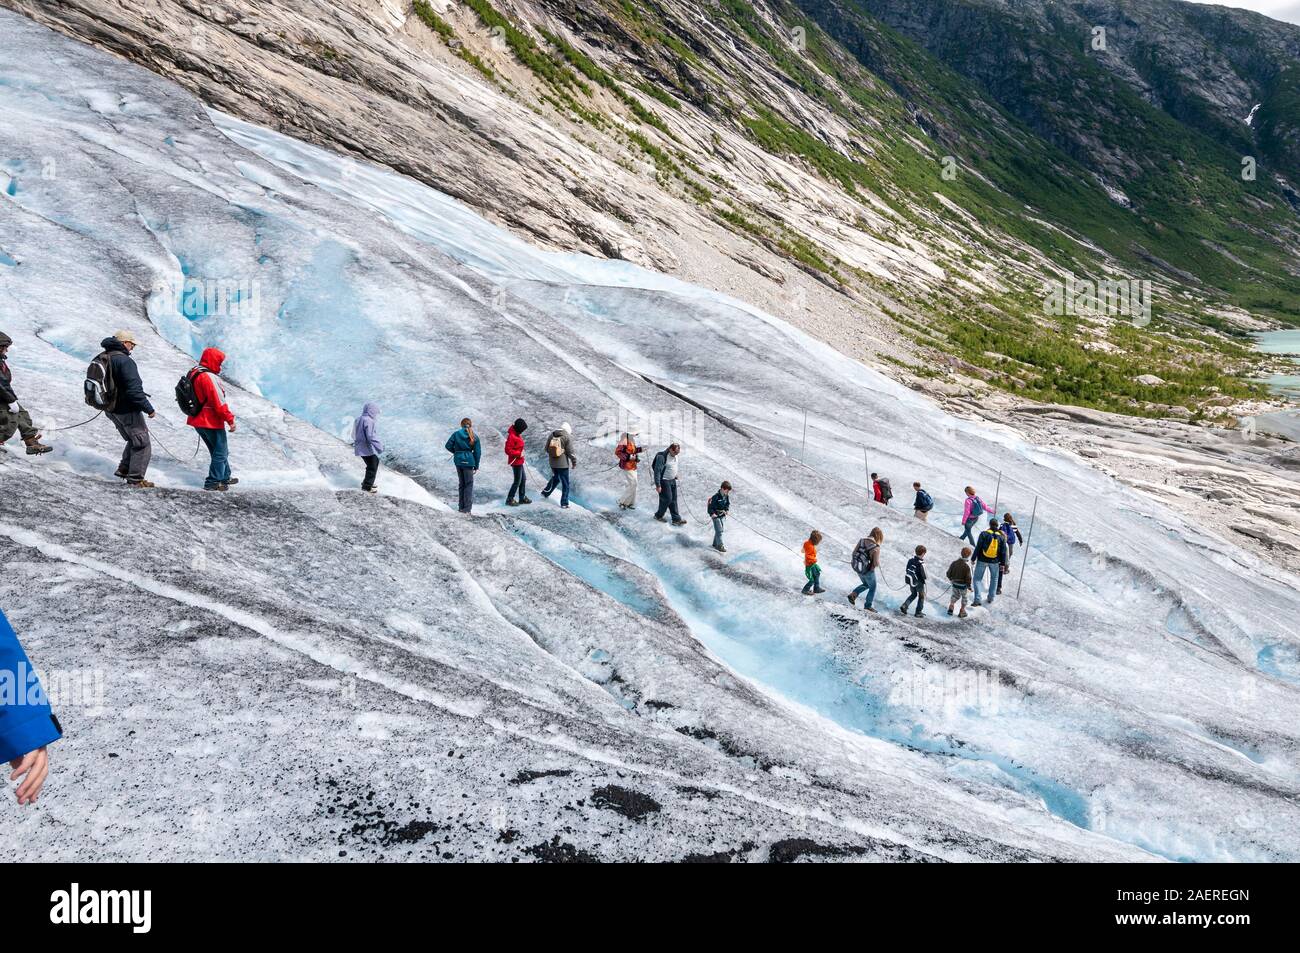 Gletscherwanderung, geführte Tour, Touren, Touristen, Wanderer, Seil, Steigeisen, gletscherzunge Nigardsbre, Norwegen Stockfoto